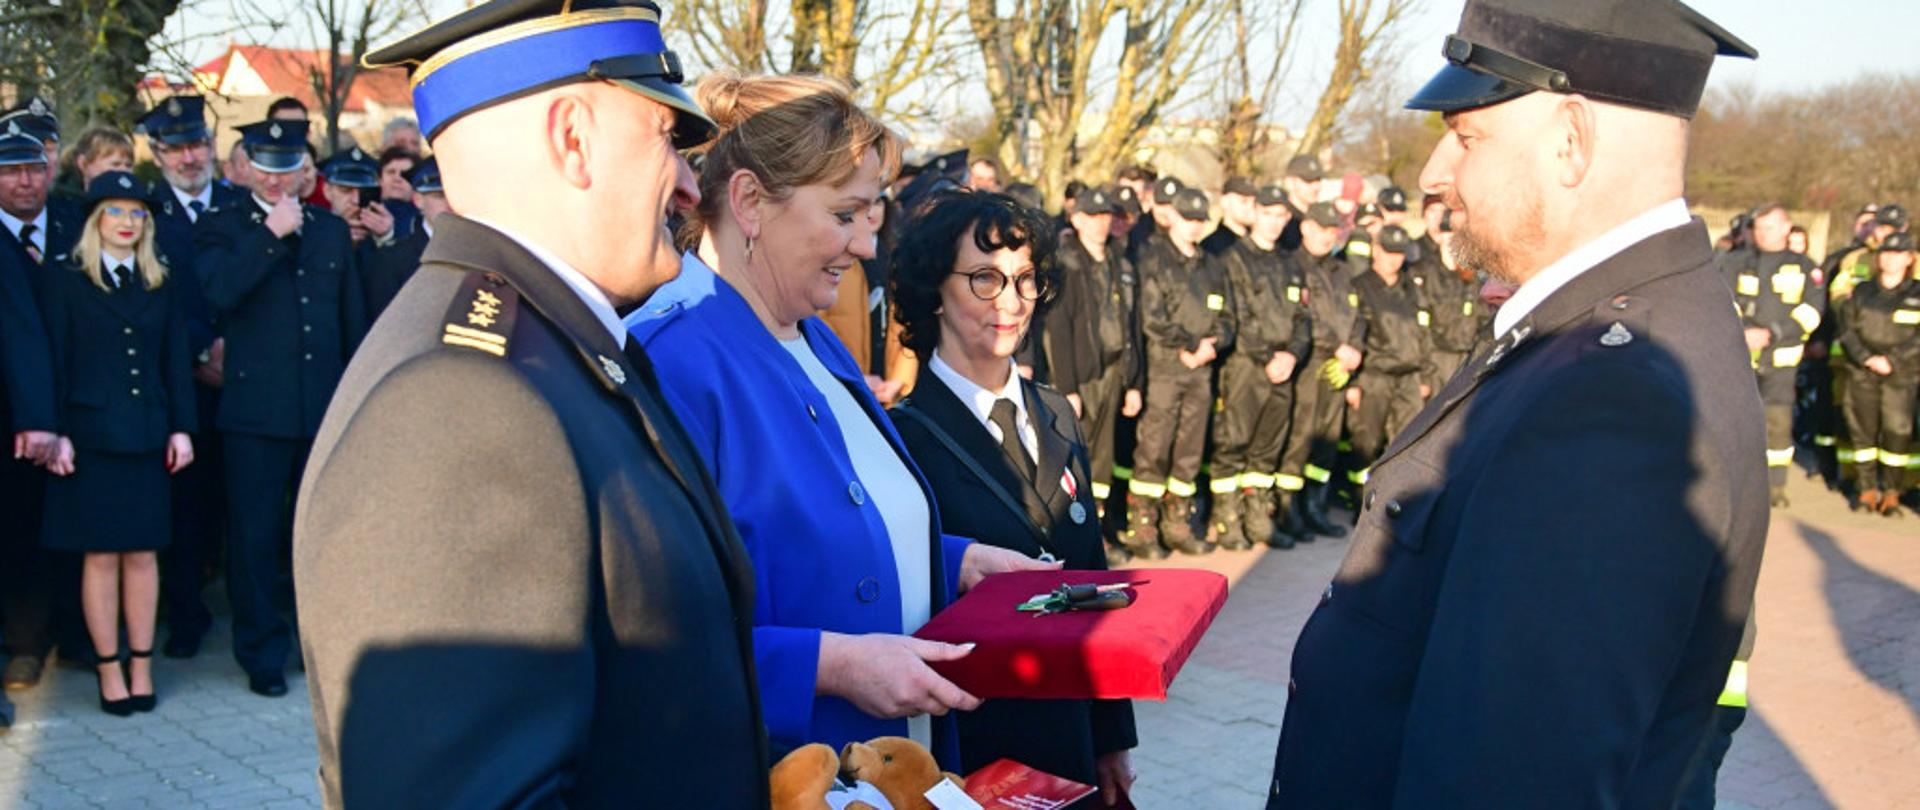 Oficer PSP - komendant, w ręku trzyma dokument i maskotkę. Z jego lewej strony dwie kobiety. Wszyscy składają gratulacje druhowi OSP. W tle kilkudziesięciu strażaków w mundurach galowych i koszarowych.